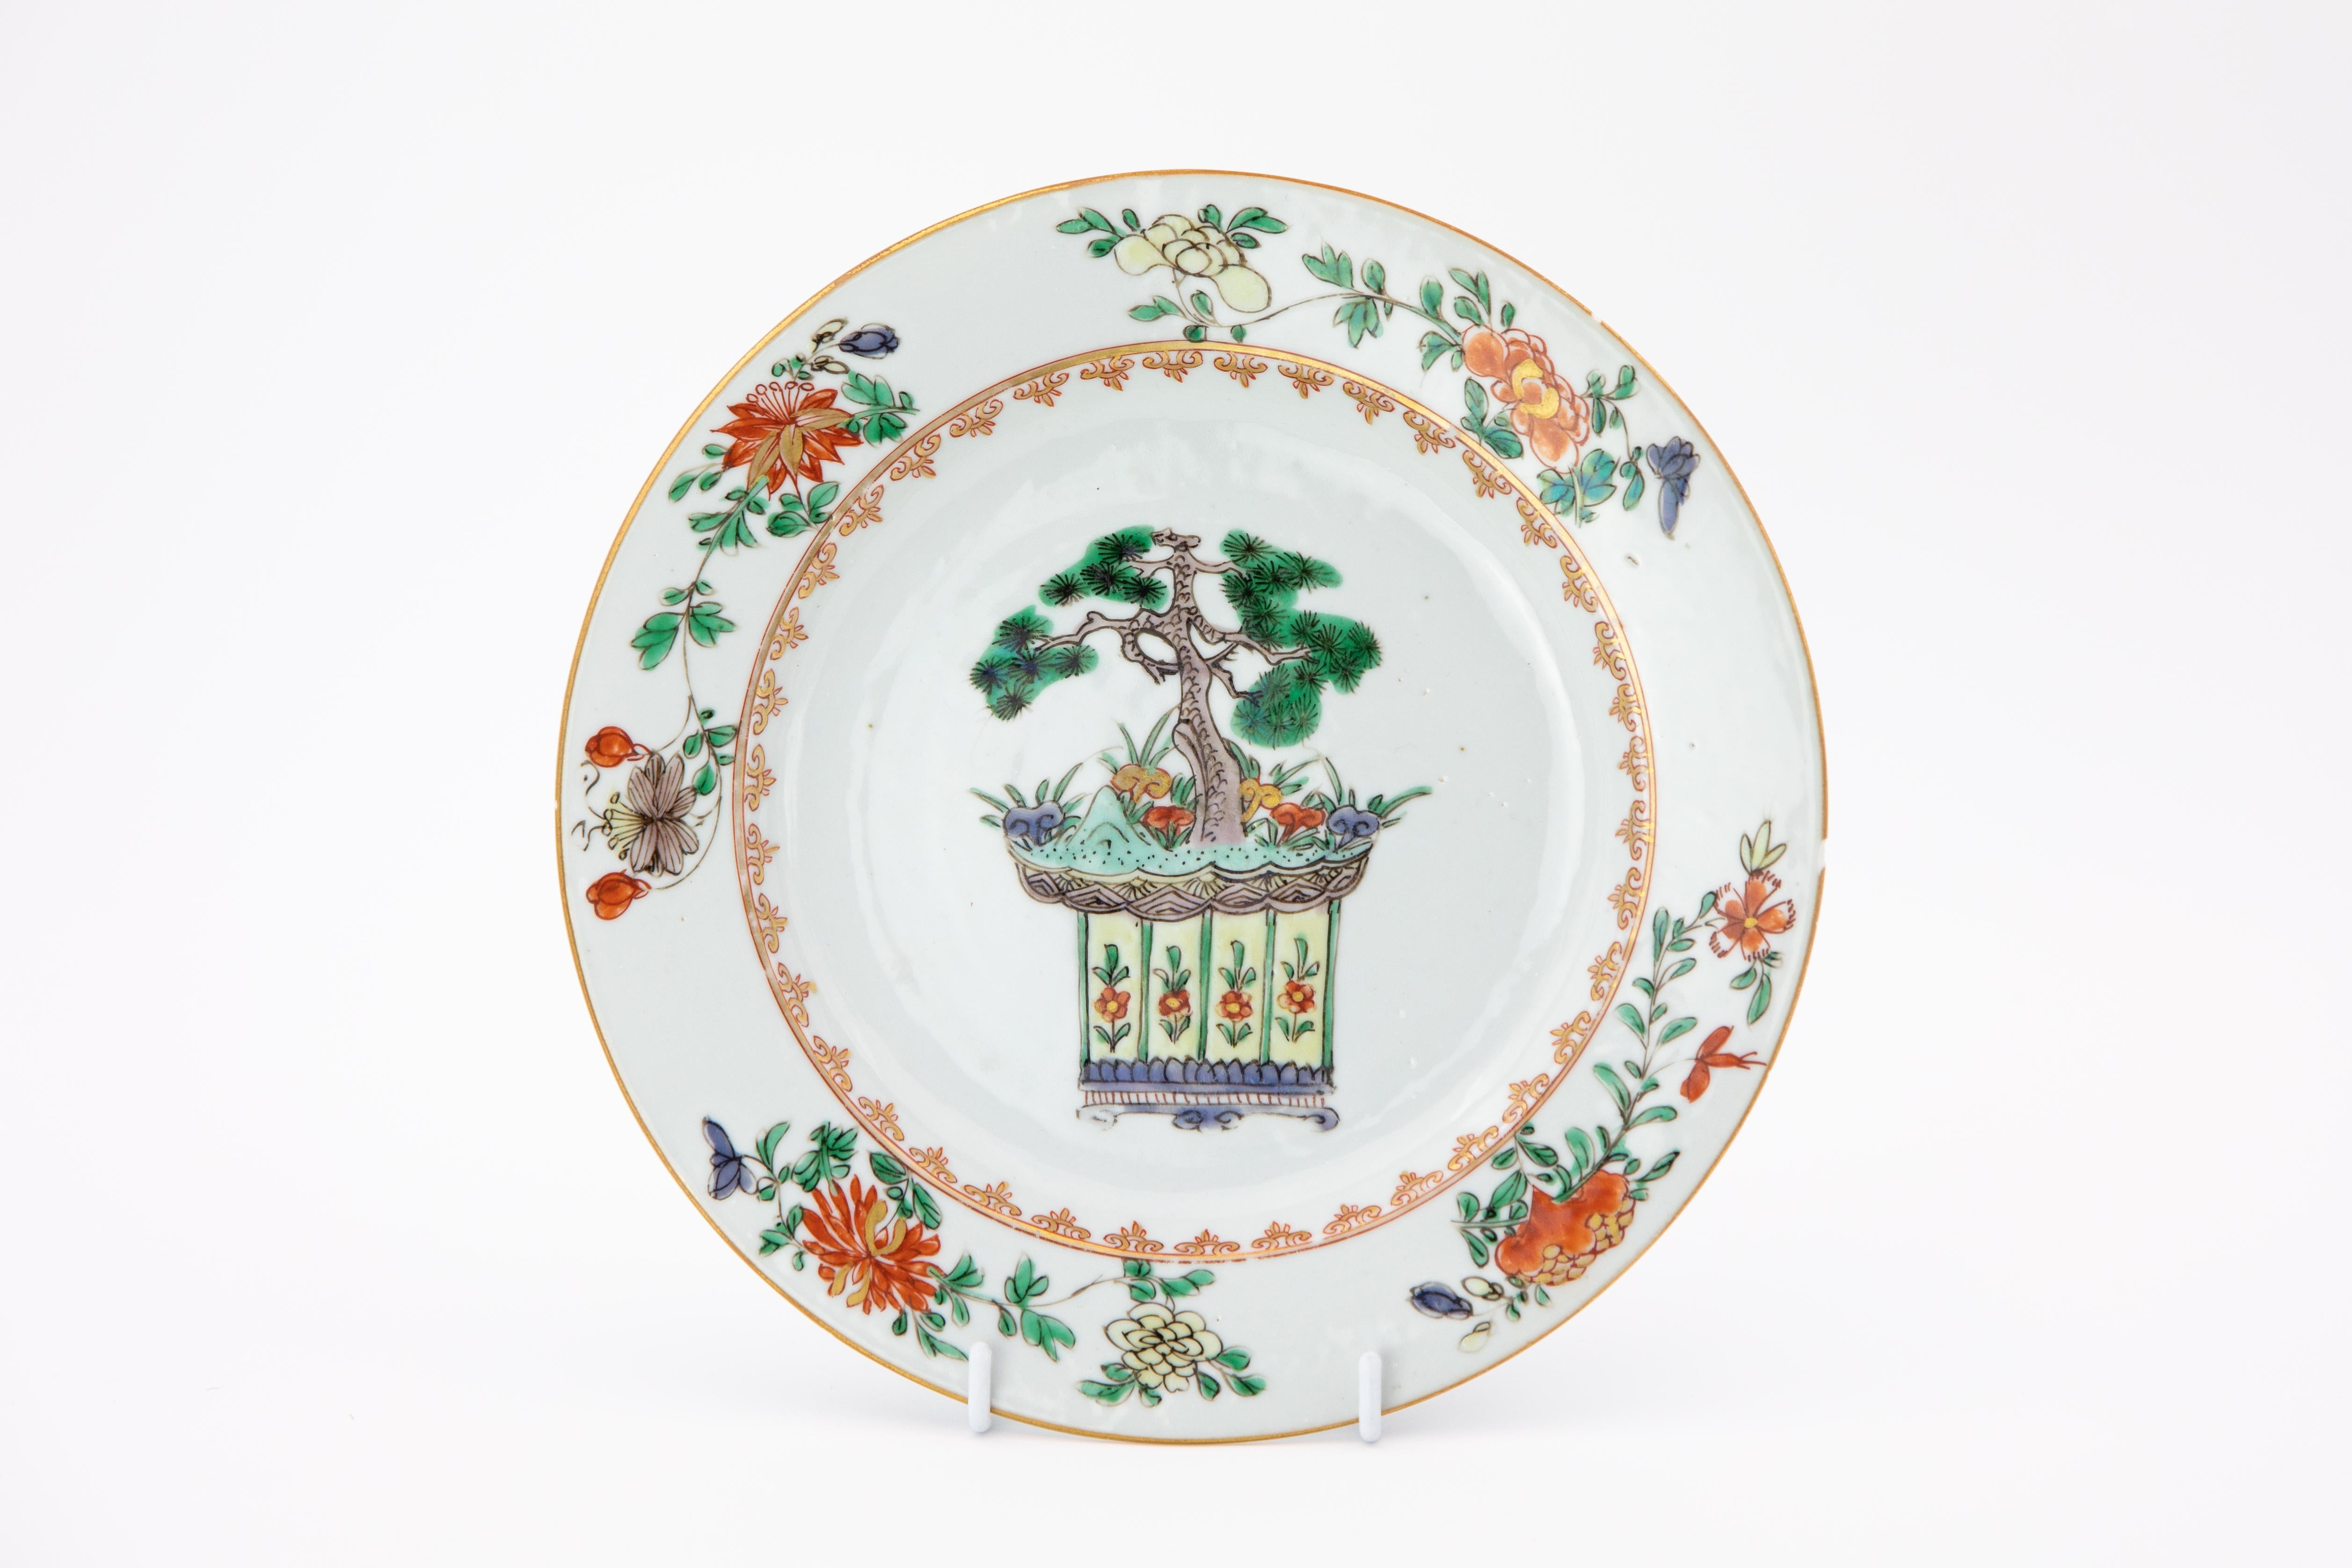 Ein Paar Famille Verte-Porzellanteller, der linke hergestellt in China während der Kangxi-Periode (reg. 1662-1722) und der rechte eine Kopie von Meissen, hergestellt um 1740.

Chinesisches Porzellan war schon immer der Standard, den die